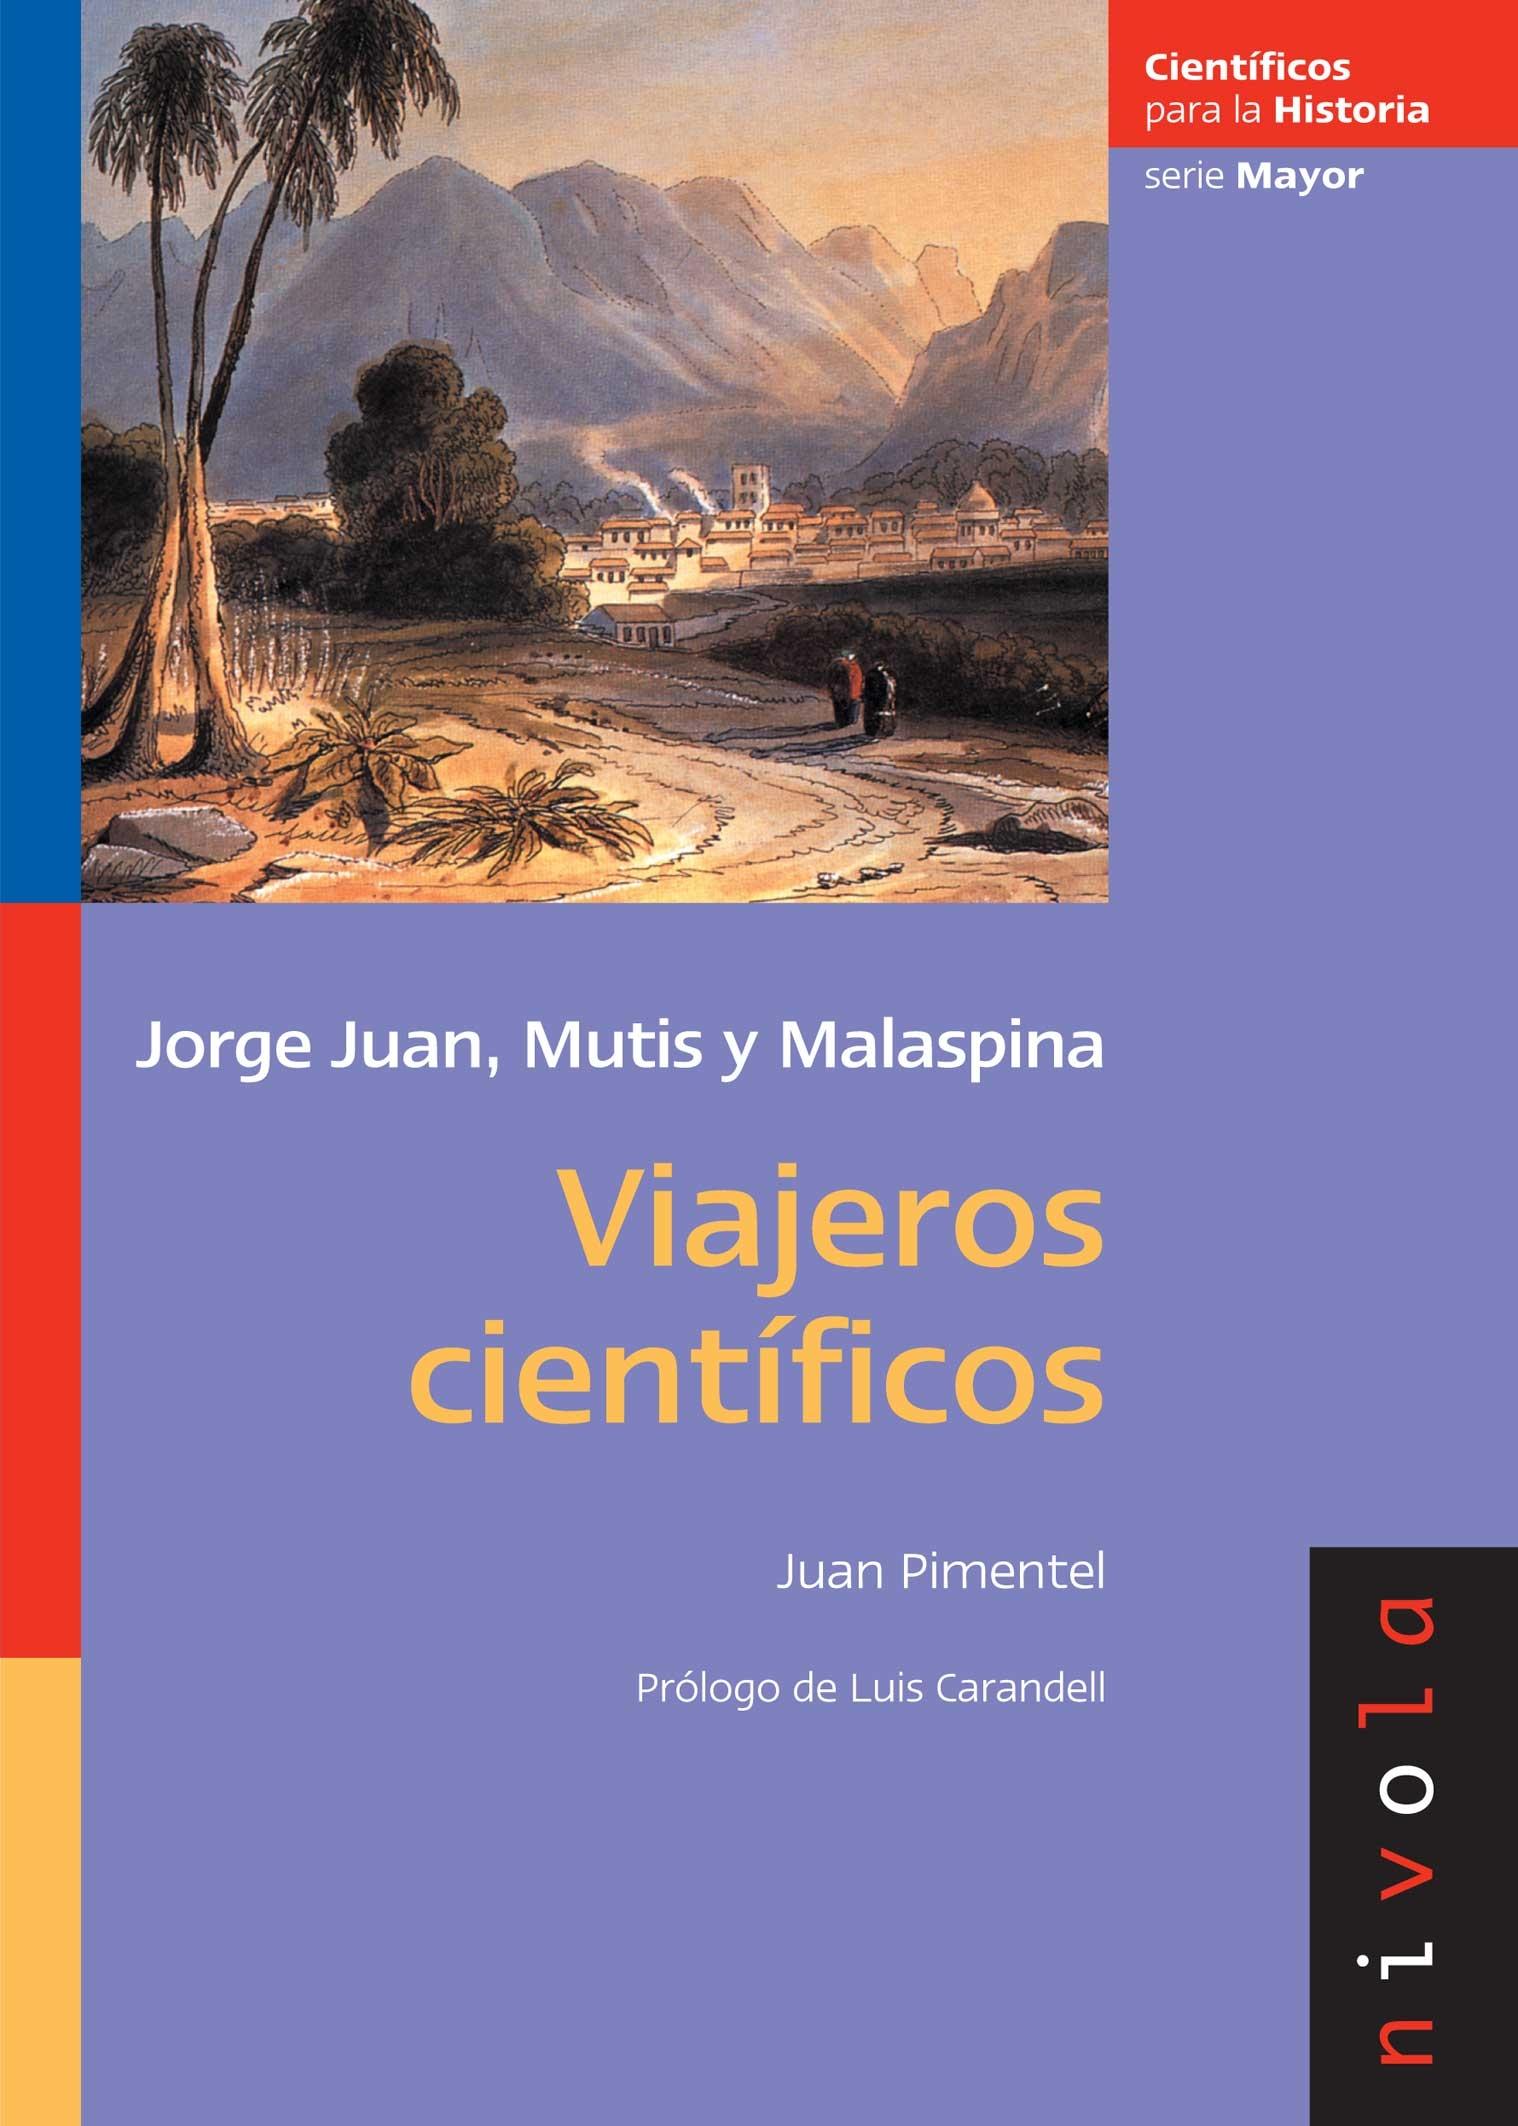 Viajeros científicos "Jorge juan, Mutis y Malaspina"